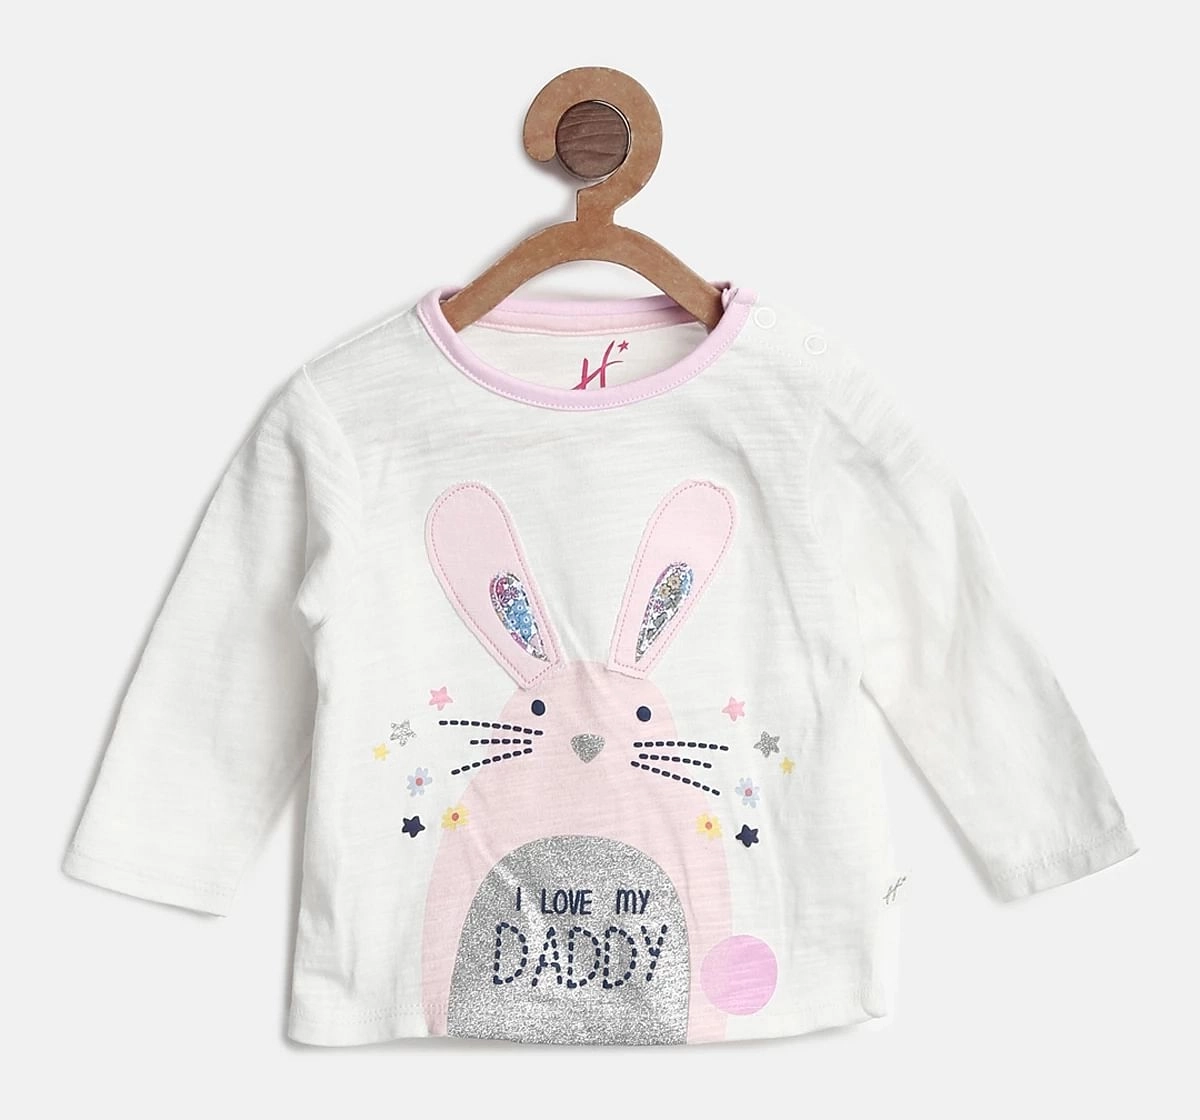 H by Hamleys Girls Full Sleeve T Shirt Rabbit Design off White